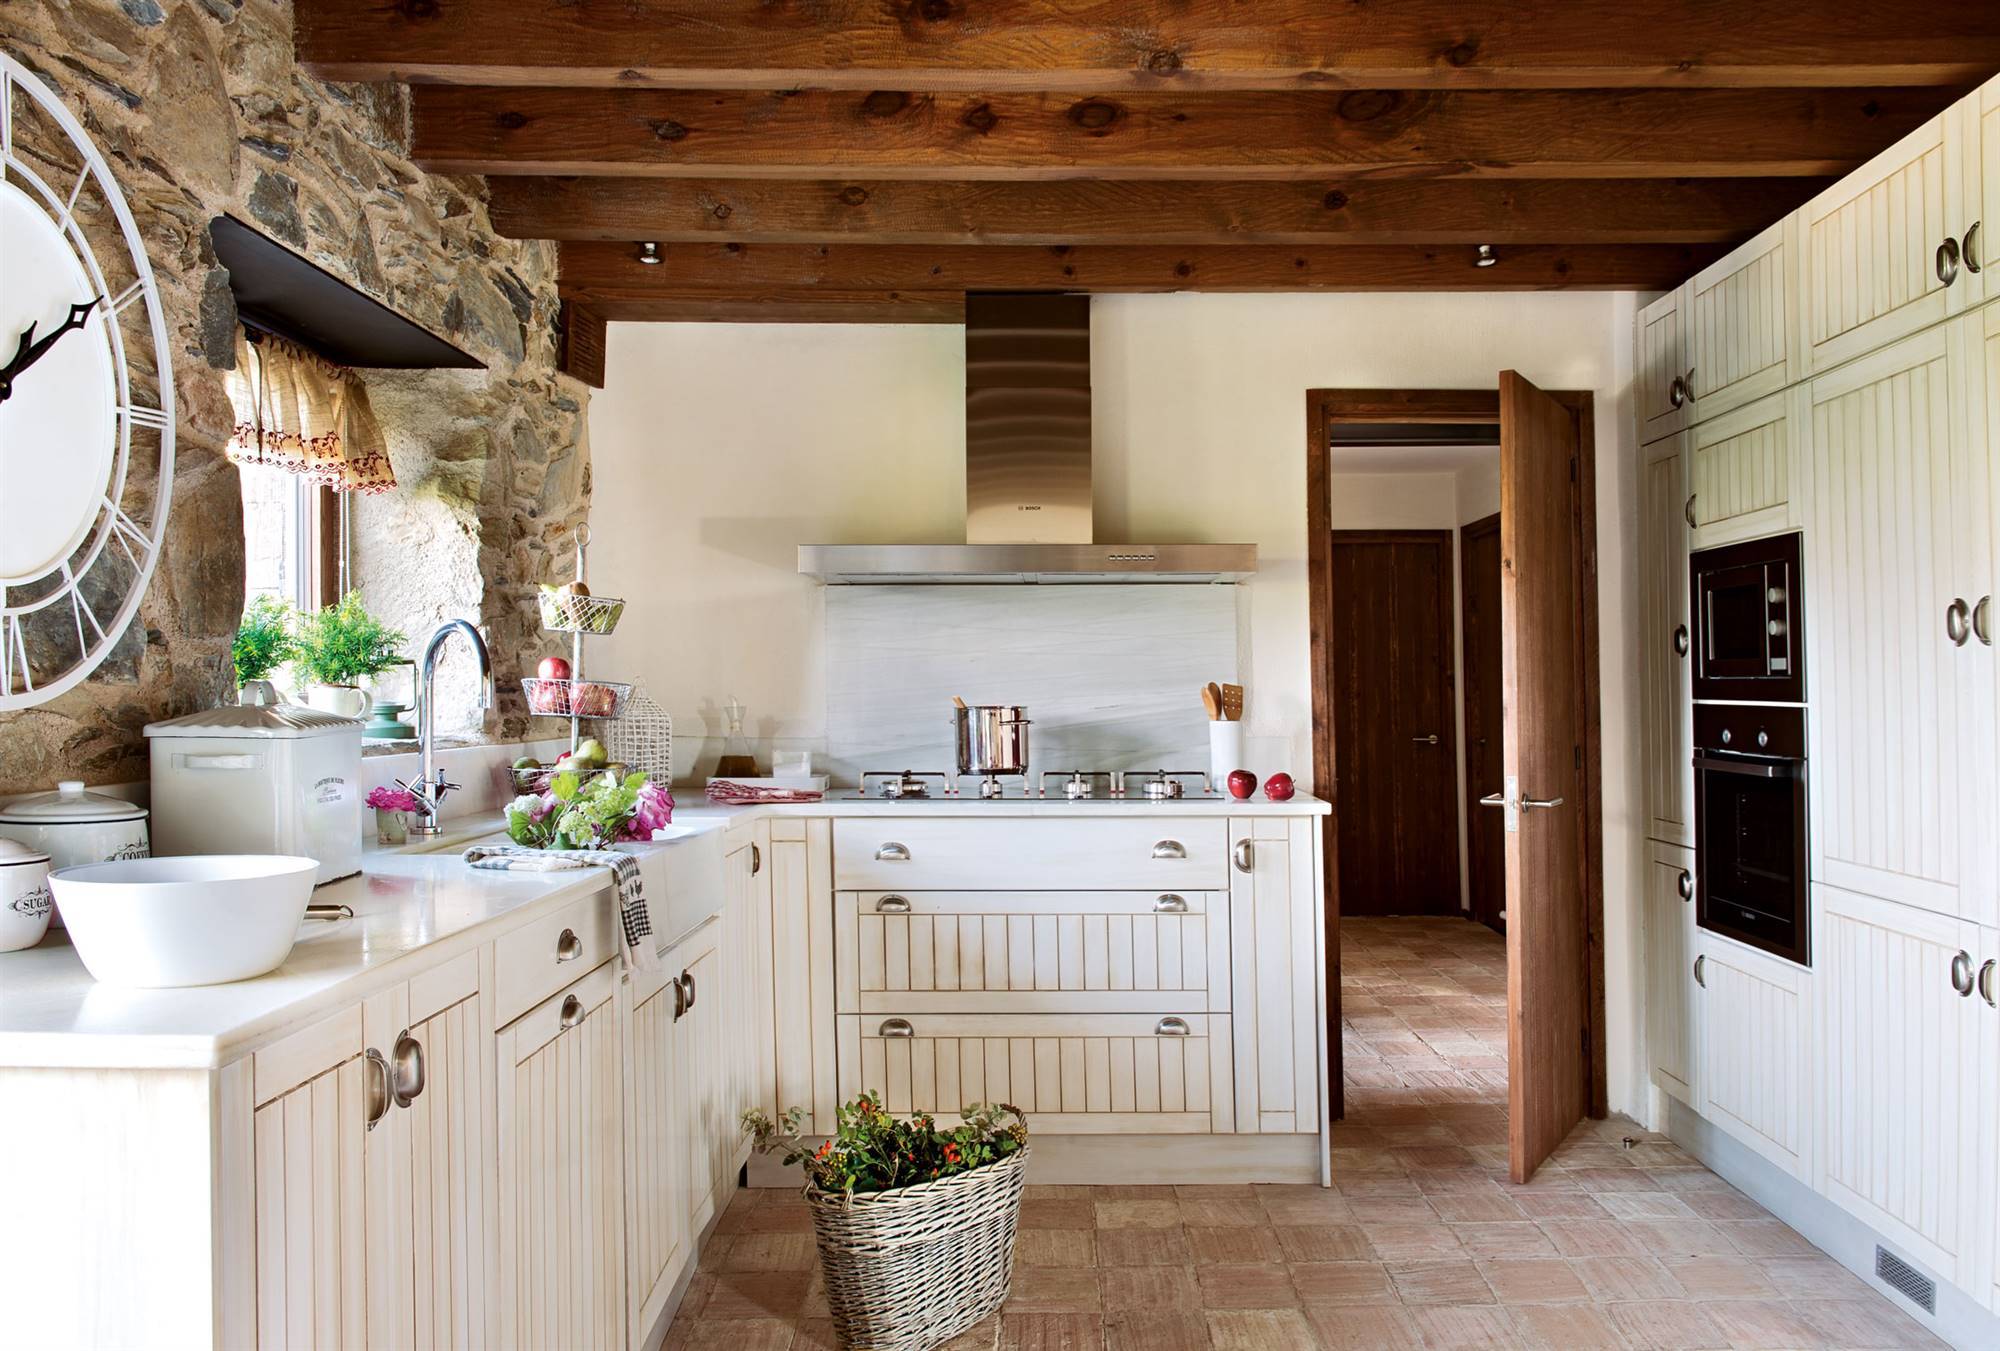 Cocina rústica con toques modernos con muebles blancos acanalados, pared de piedra y vigas de madera. 